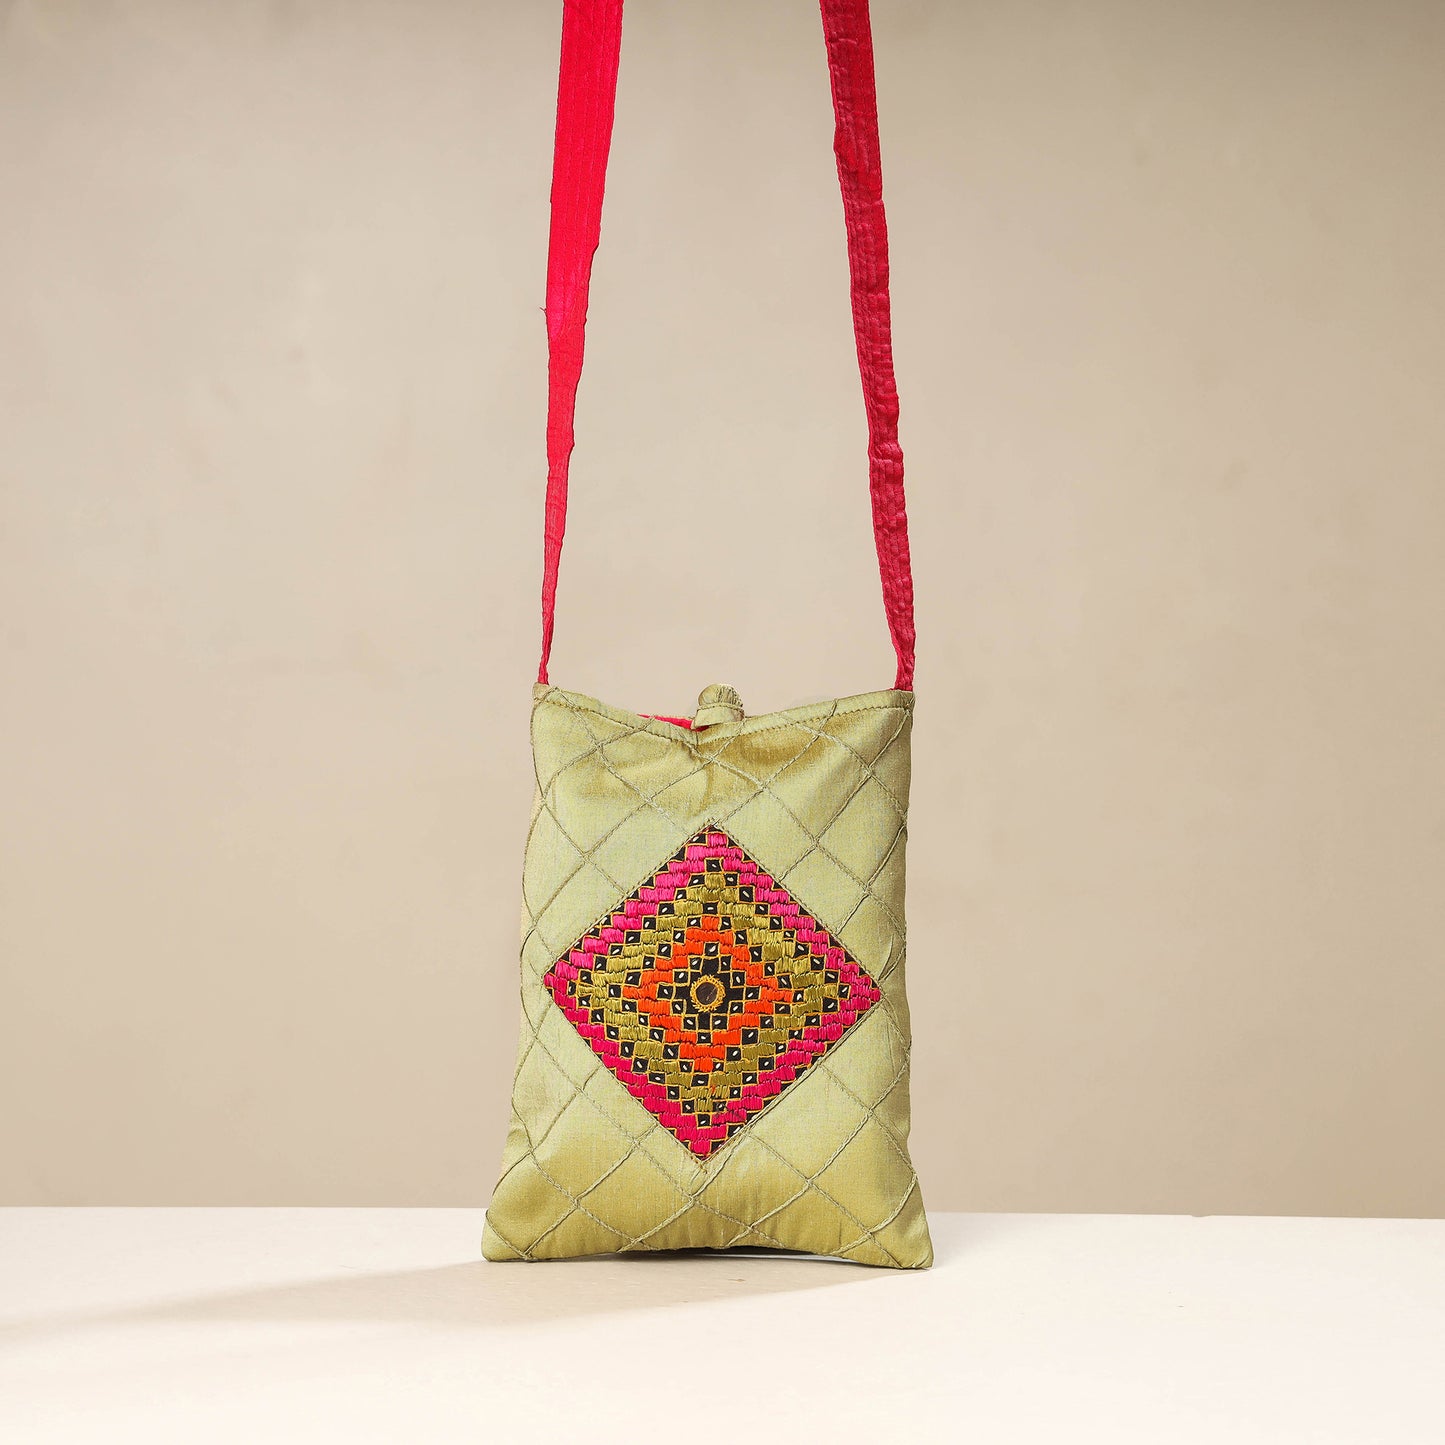 Green - Kutch Katri Embroidery Silk Sling Bag